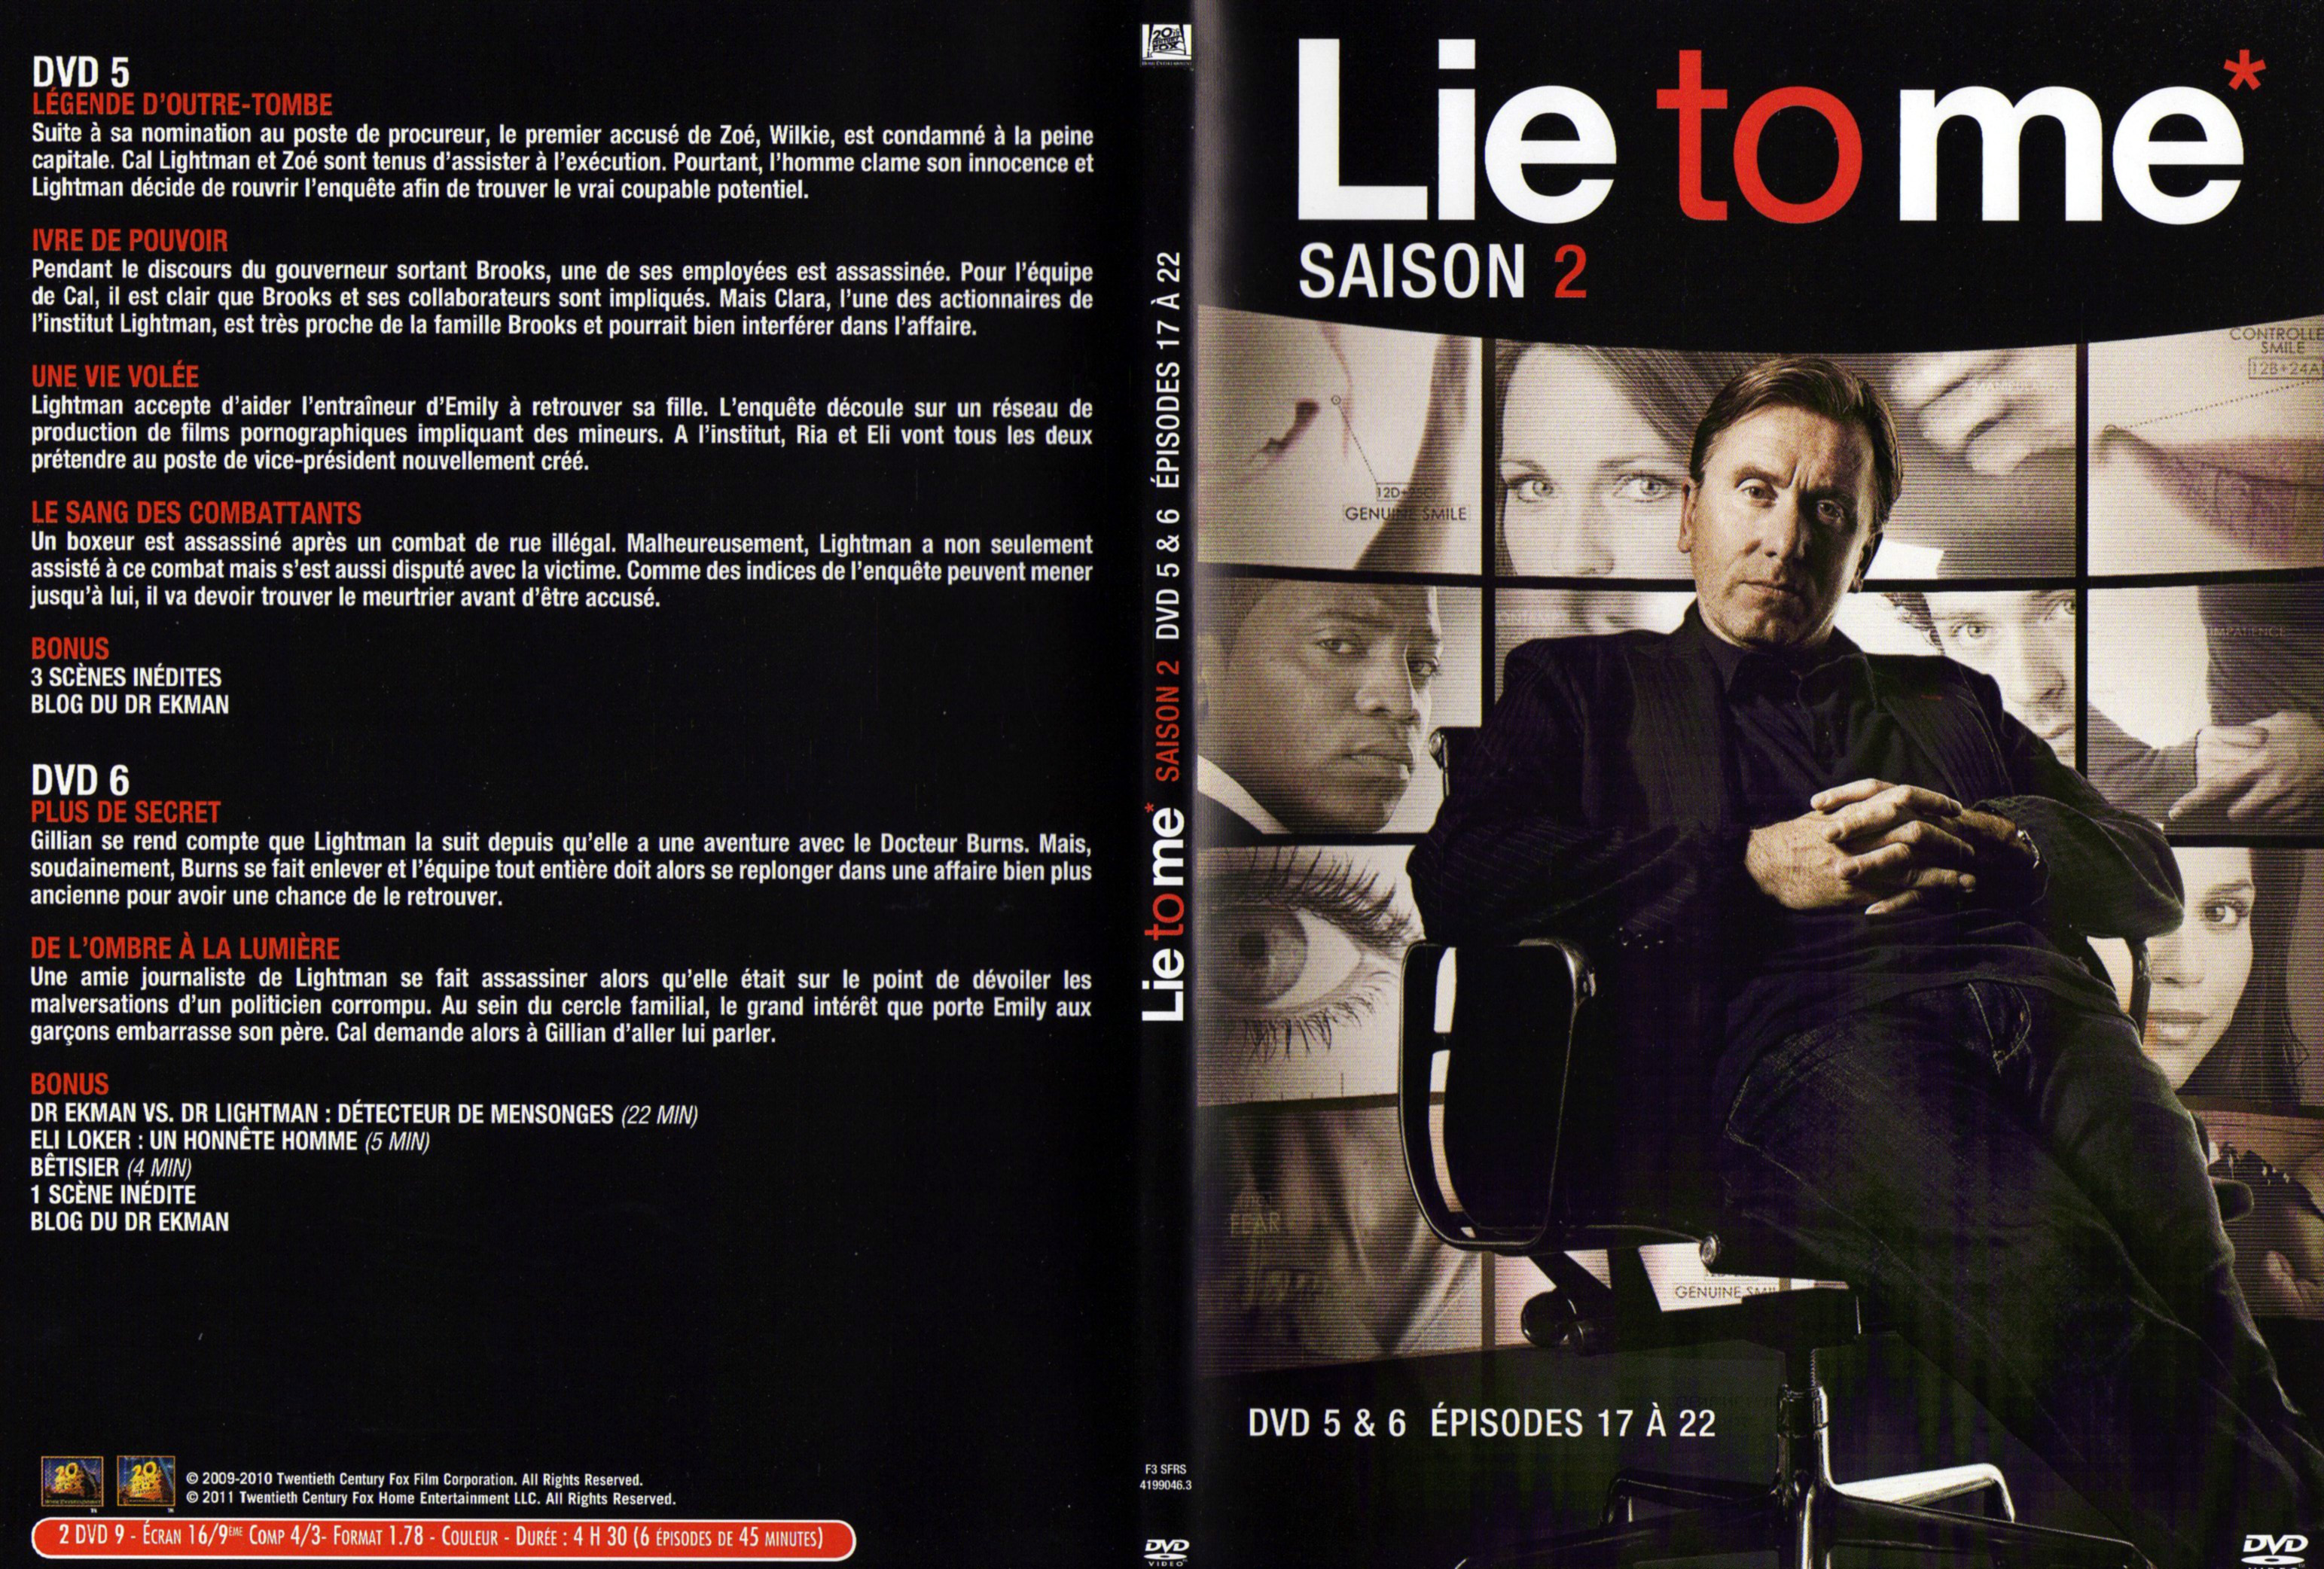 Jaquette DVD Lie to me Saison 2 DVD 3